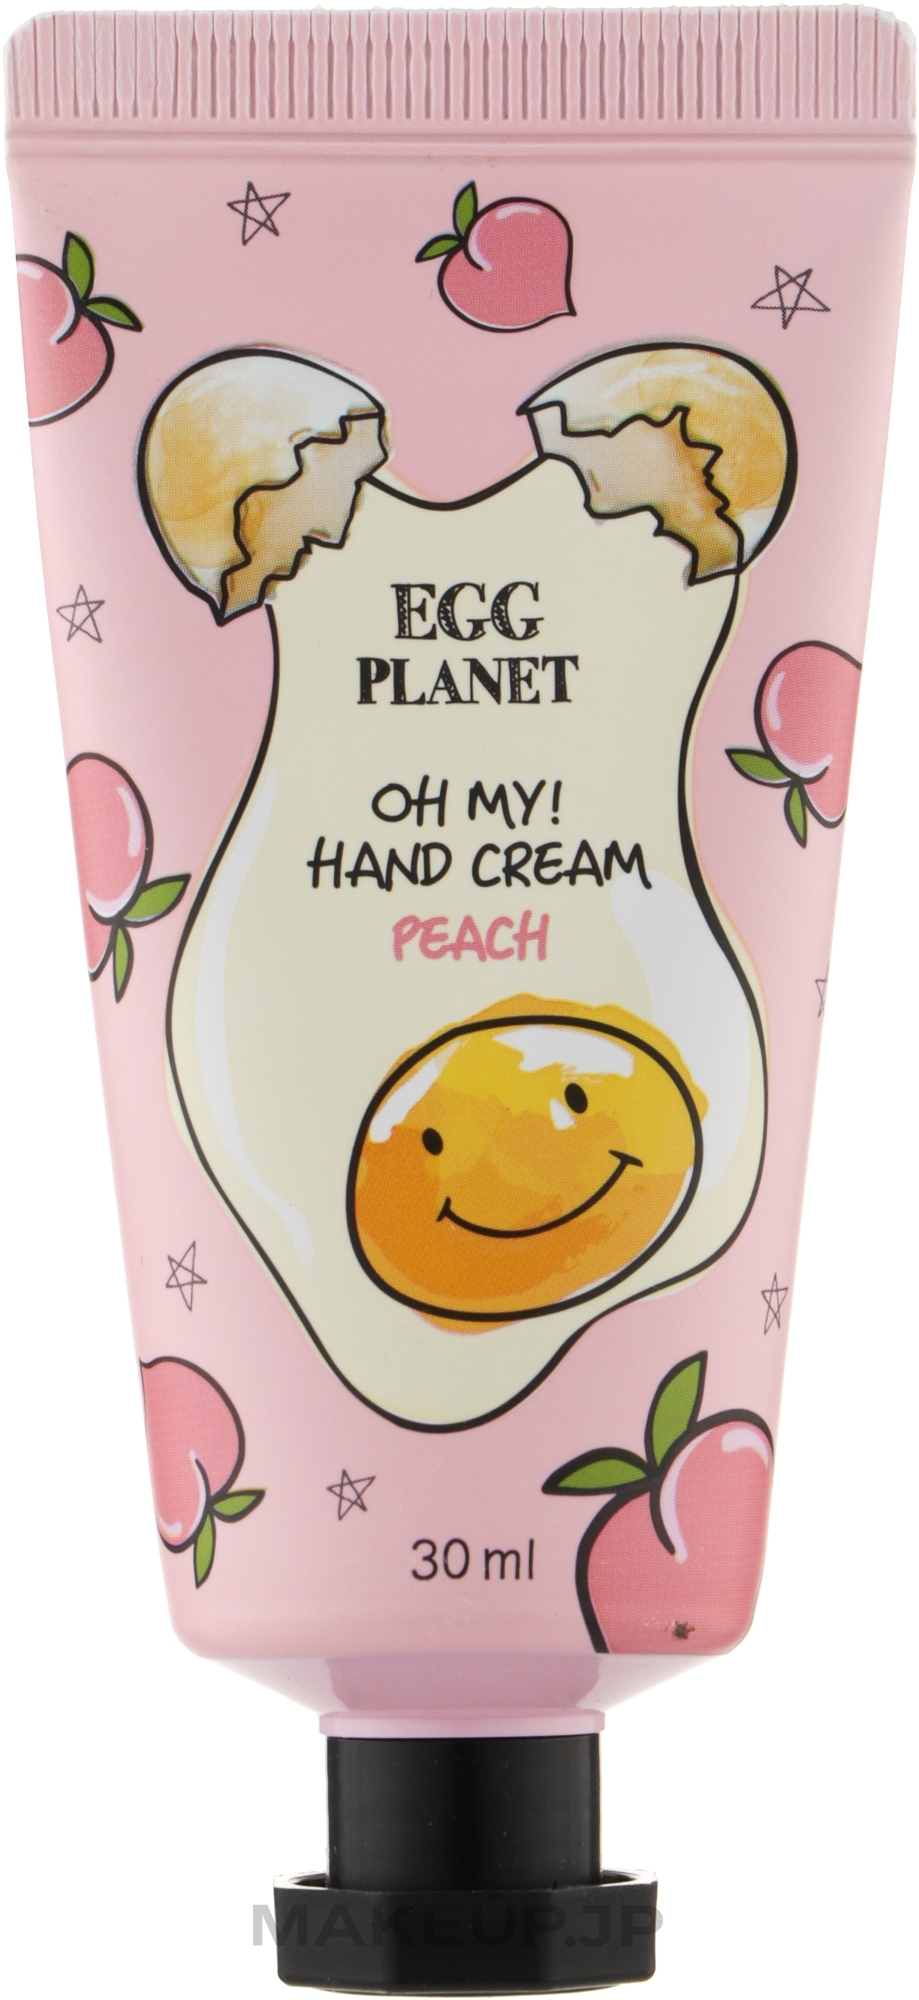 Peach Hand Cream - Daeng Gi Meo Ri Egg Planet Peach Hand Cream — photo 30 ml